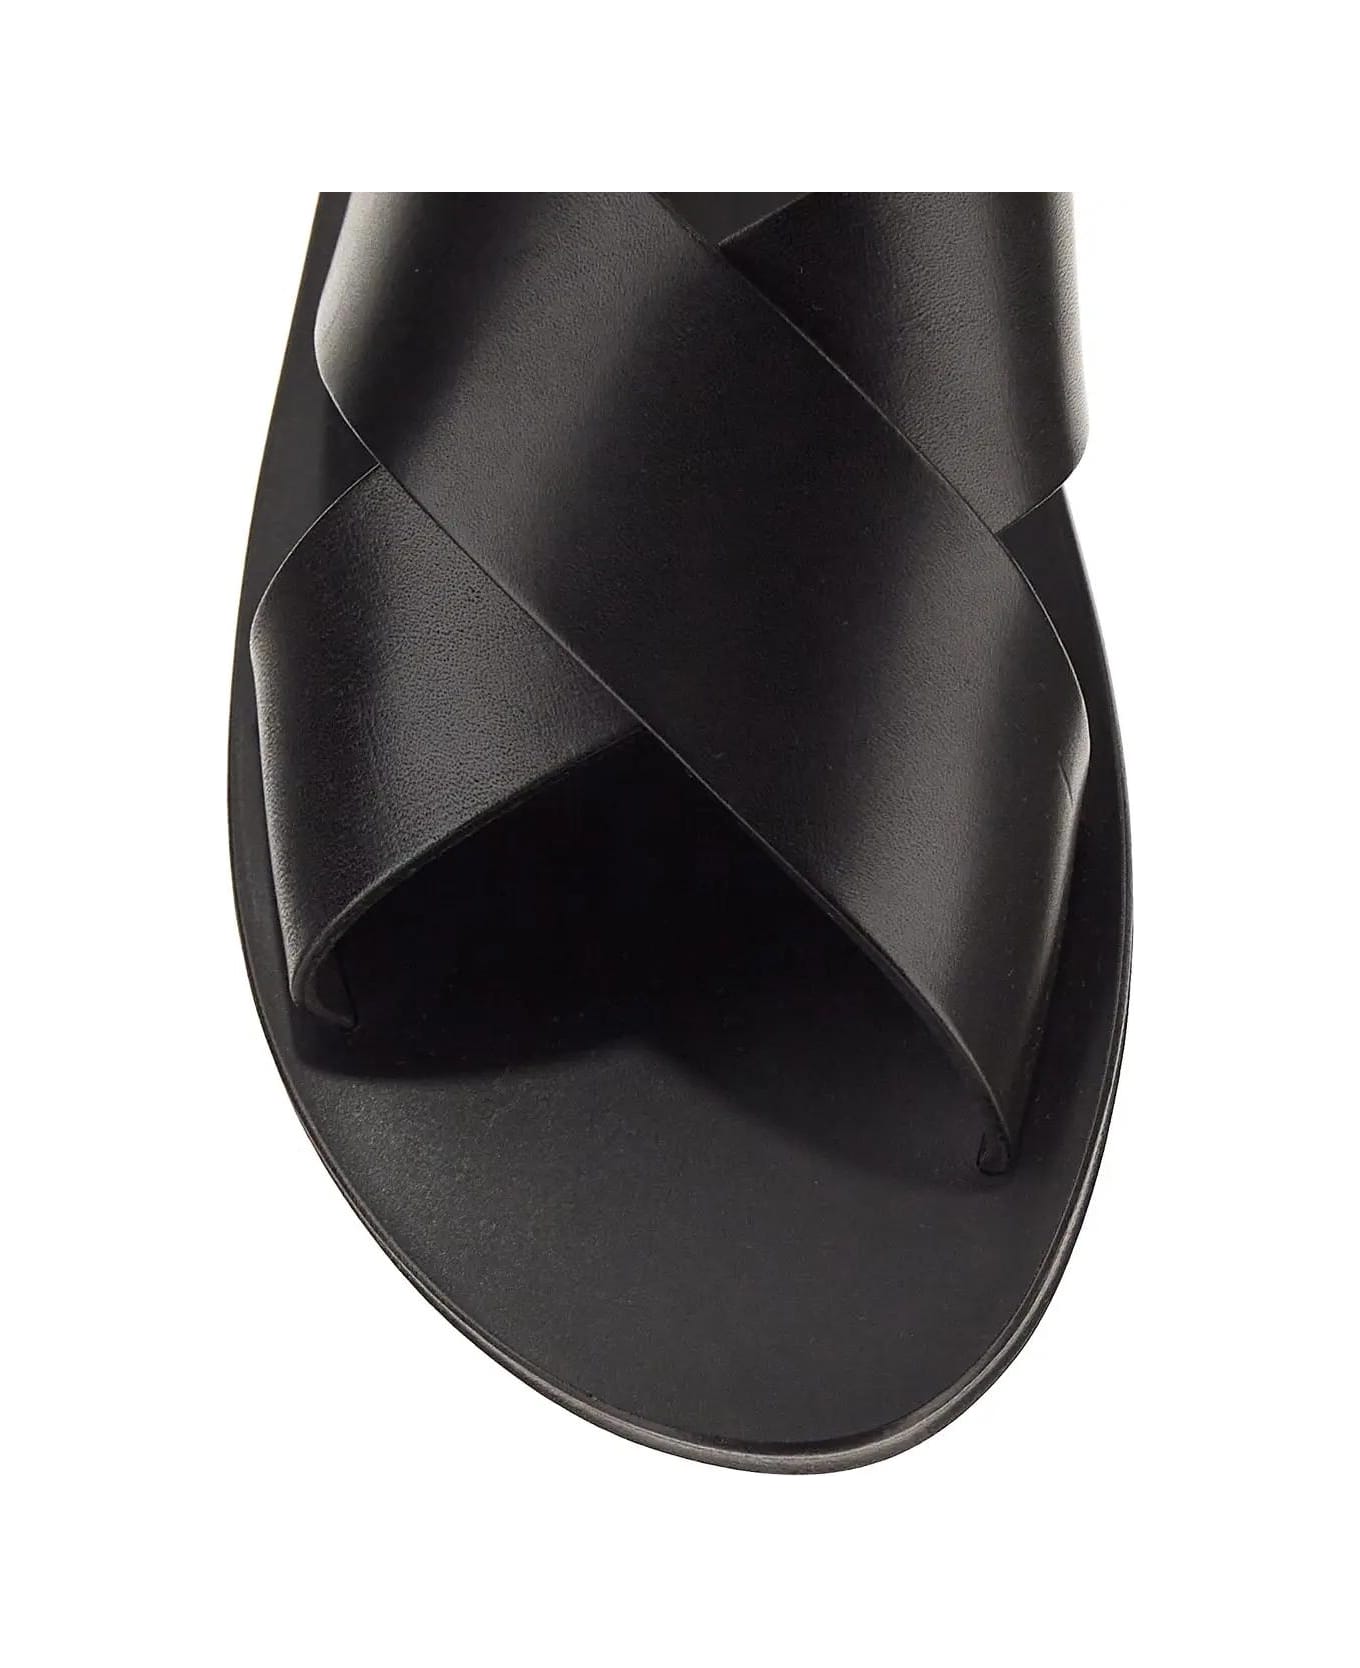 Saint Laurent Mojave Sandals - Black